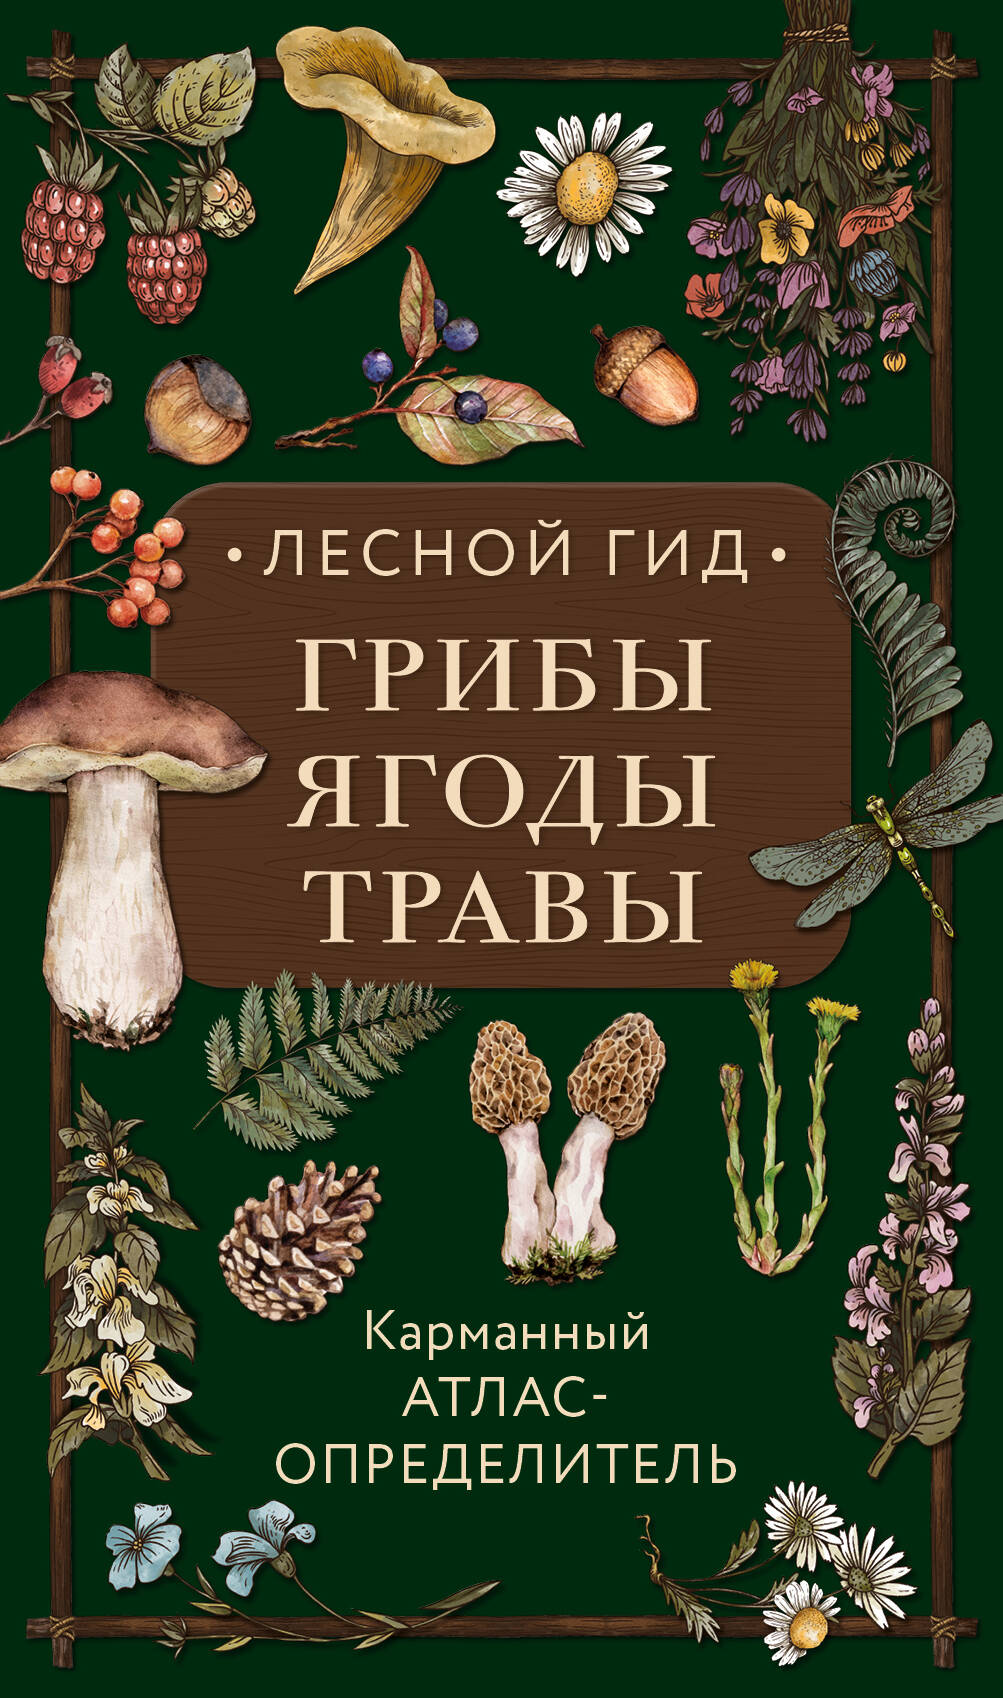 Лесной гид: грибы, ягоды, травы. Карманный атлас-определитель семенова людмила семеновна лесной гид грибы ягоды травы карманный атлас определитель